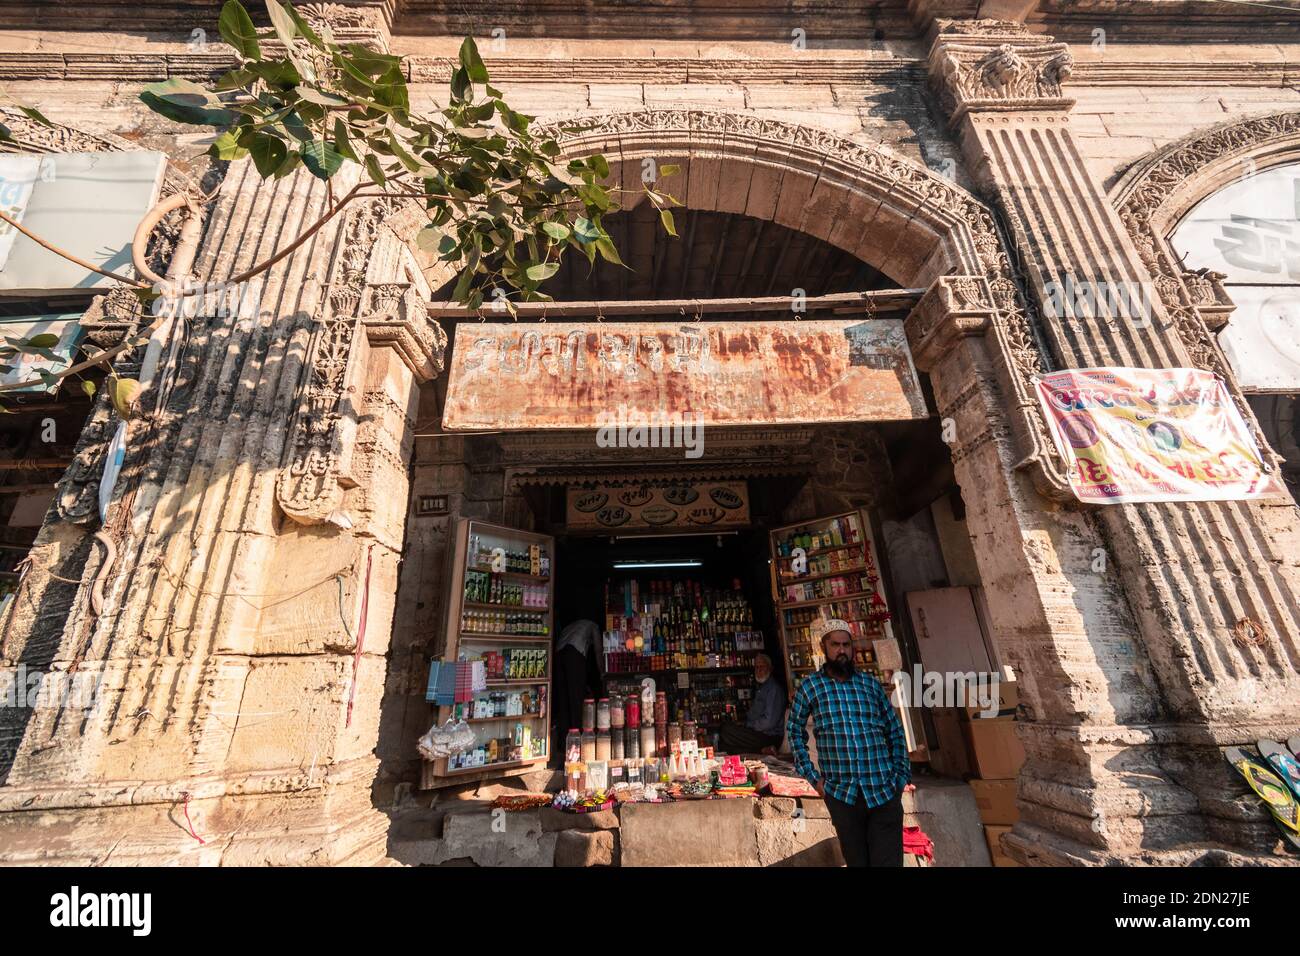 Jamnagar, Gujarat, India - Diciembre 2018: Parte de una columnata arqueada en el antiguo mercado del Bazar Chandi en la ciudad vieja. Foto de stock